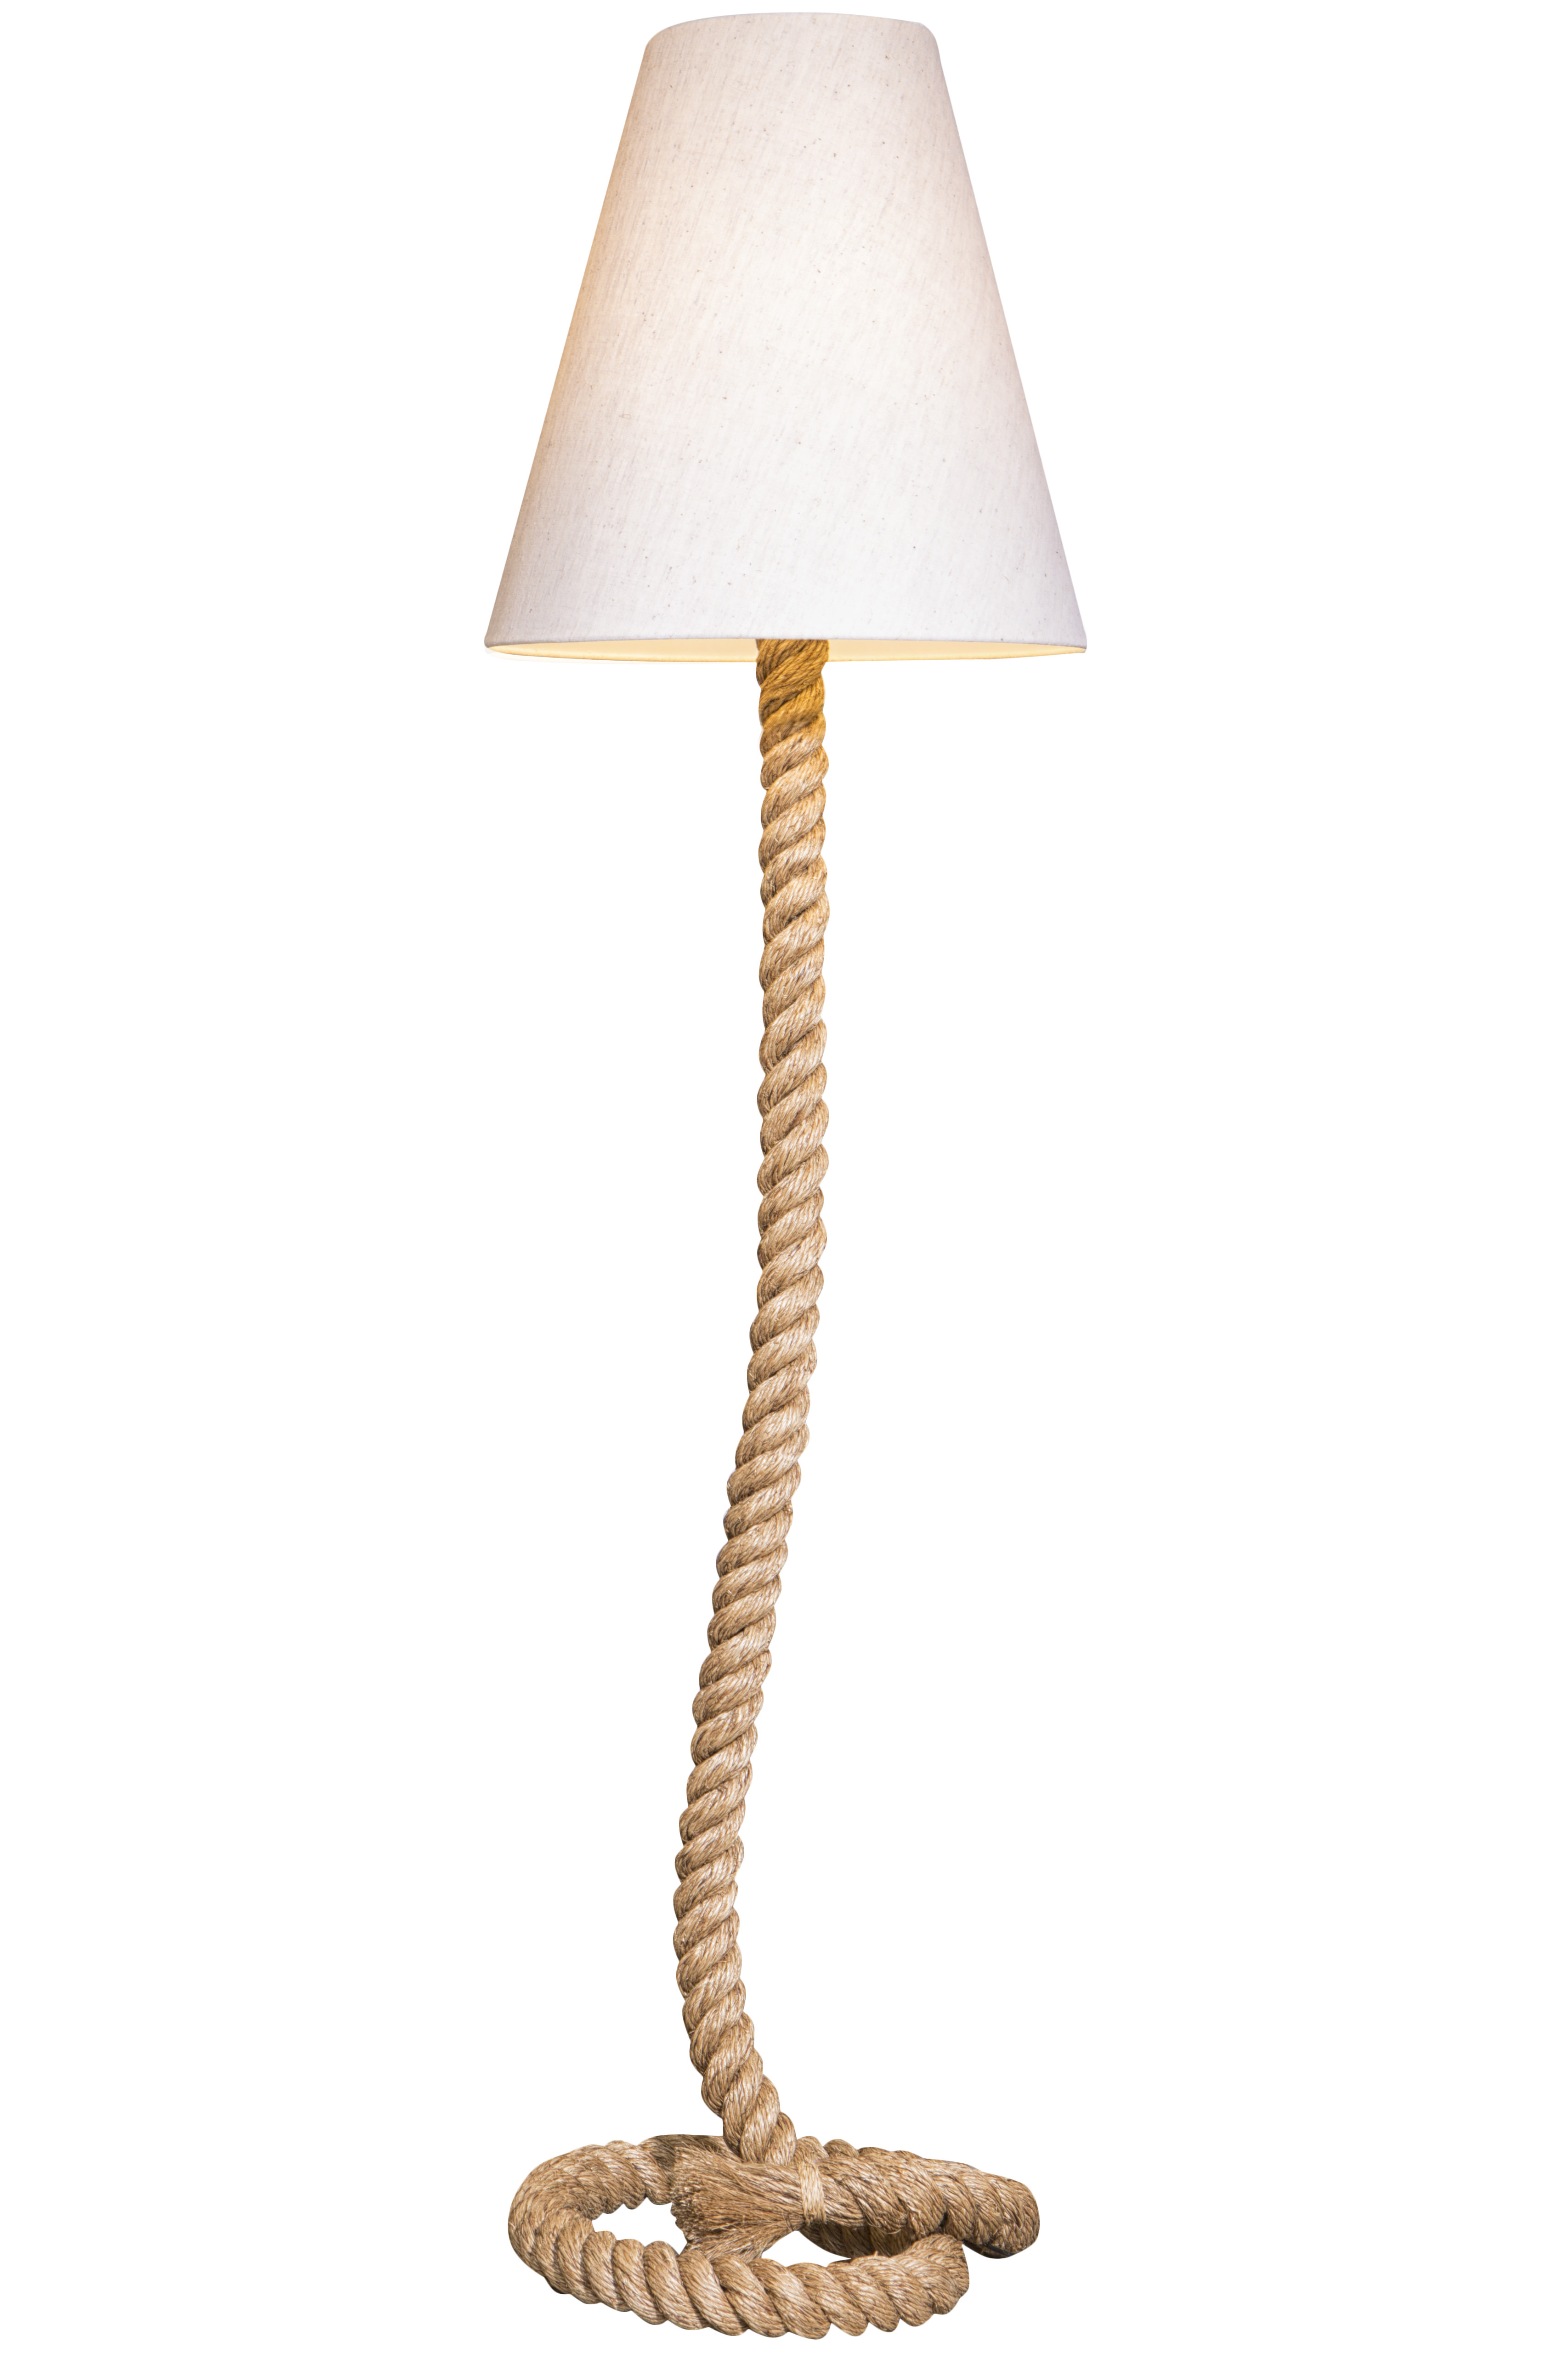 Stehlampe Taulampe Tau 160cm beige natur Maritim Design Stehleuchte 